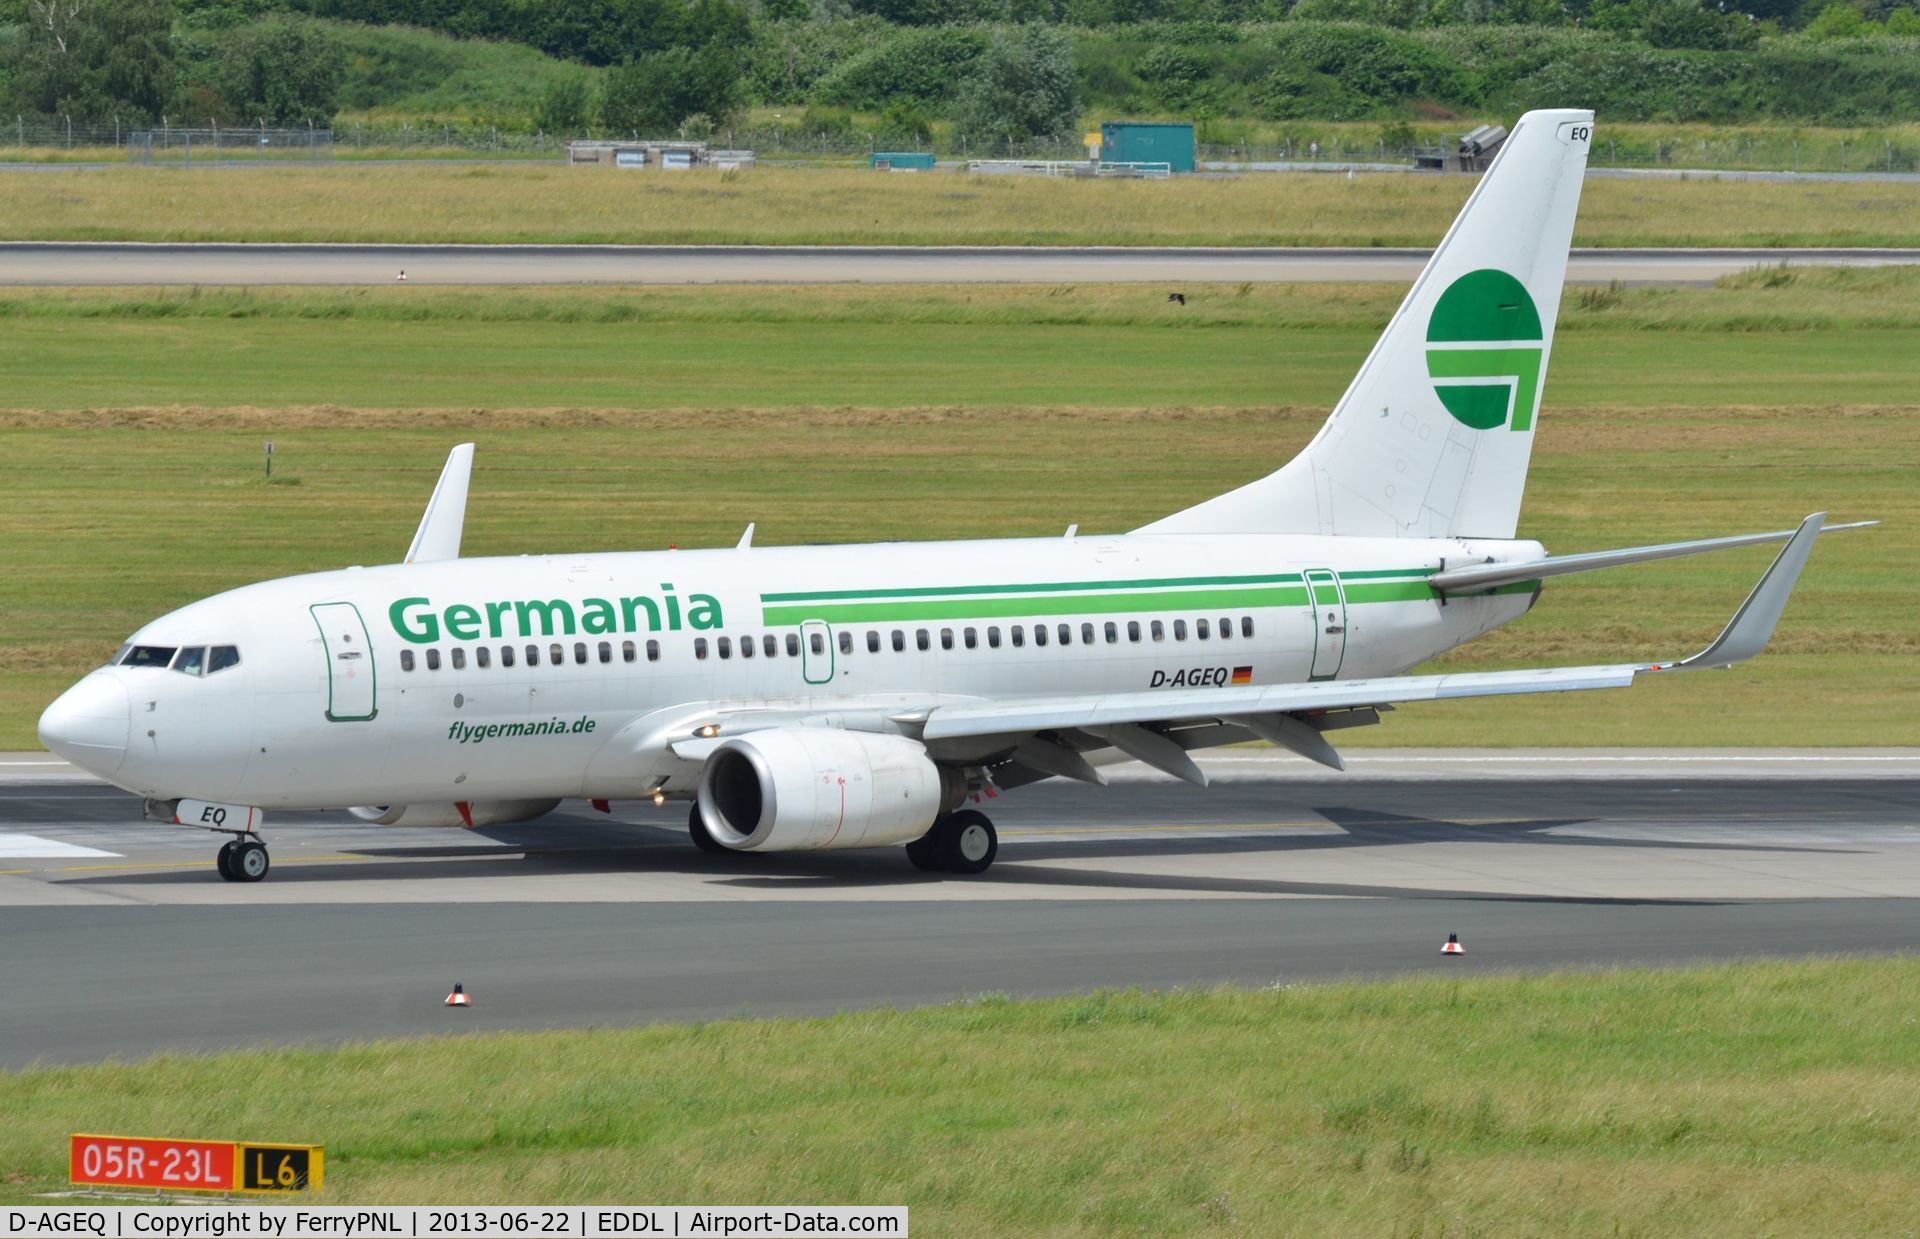 D-AGEQ, 1998 Boeing 737-75B C/N 28103, Germania B737 vacating runway